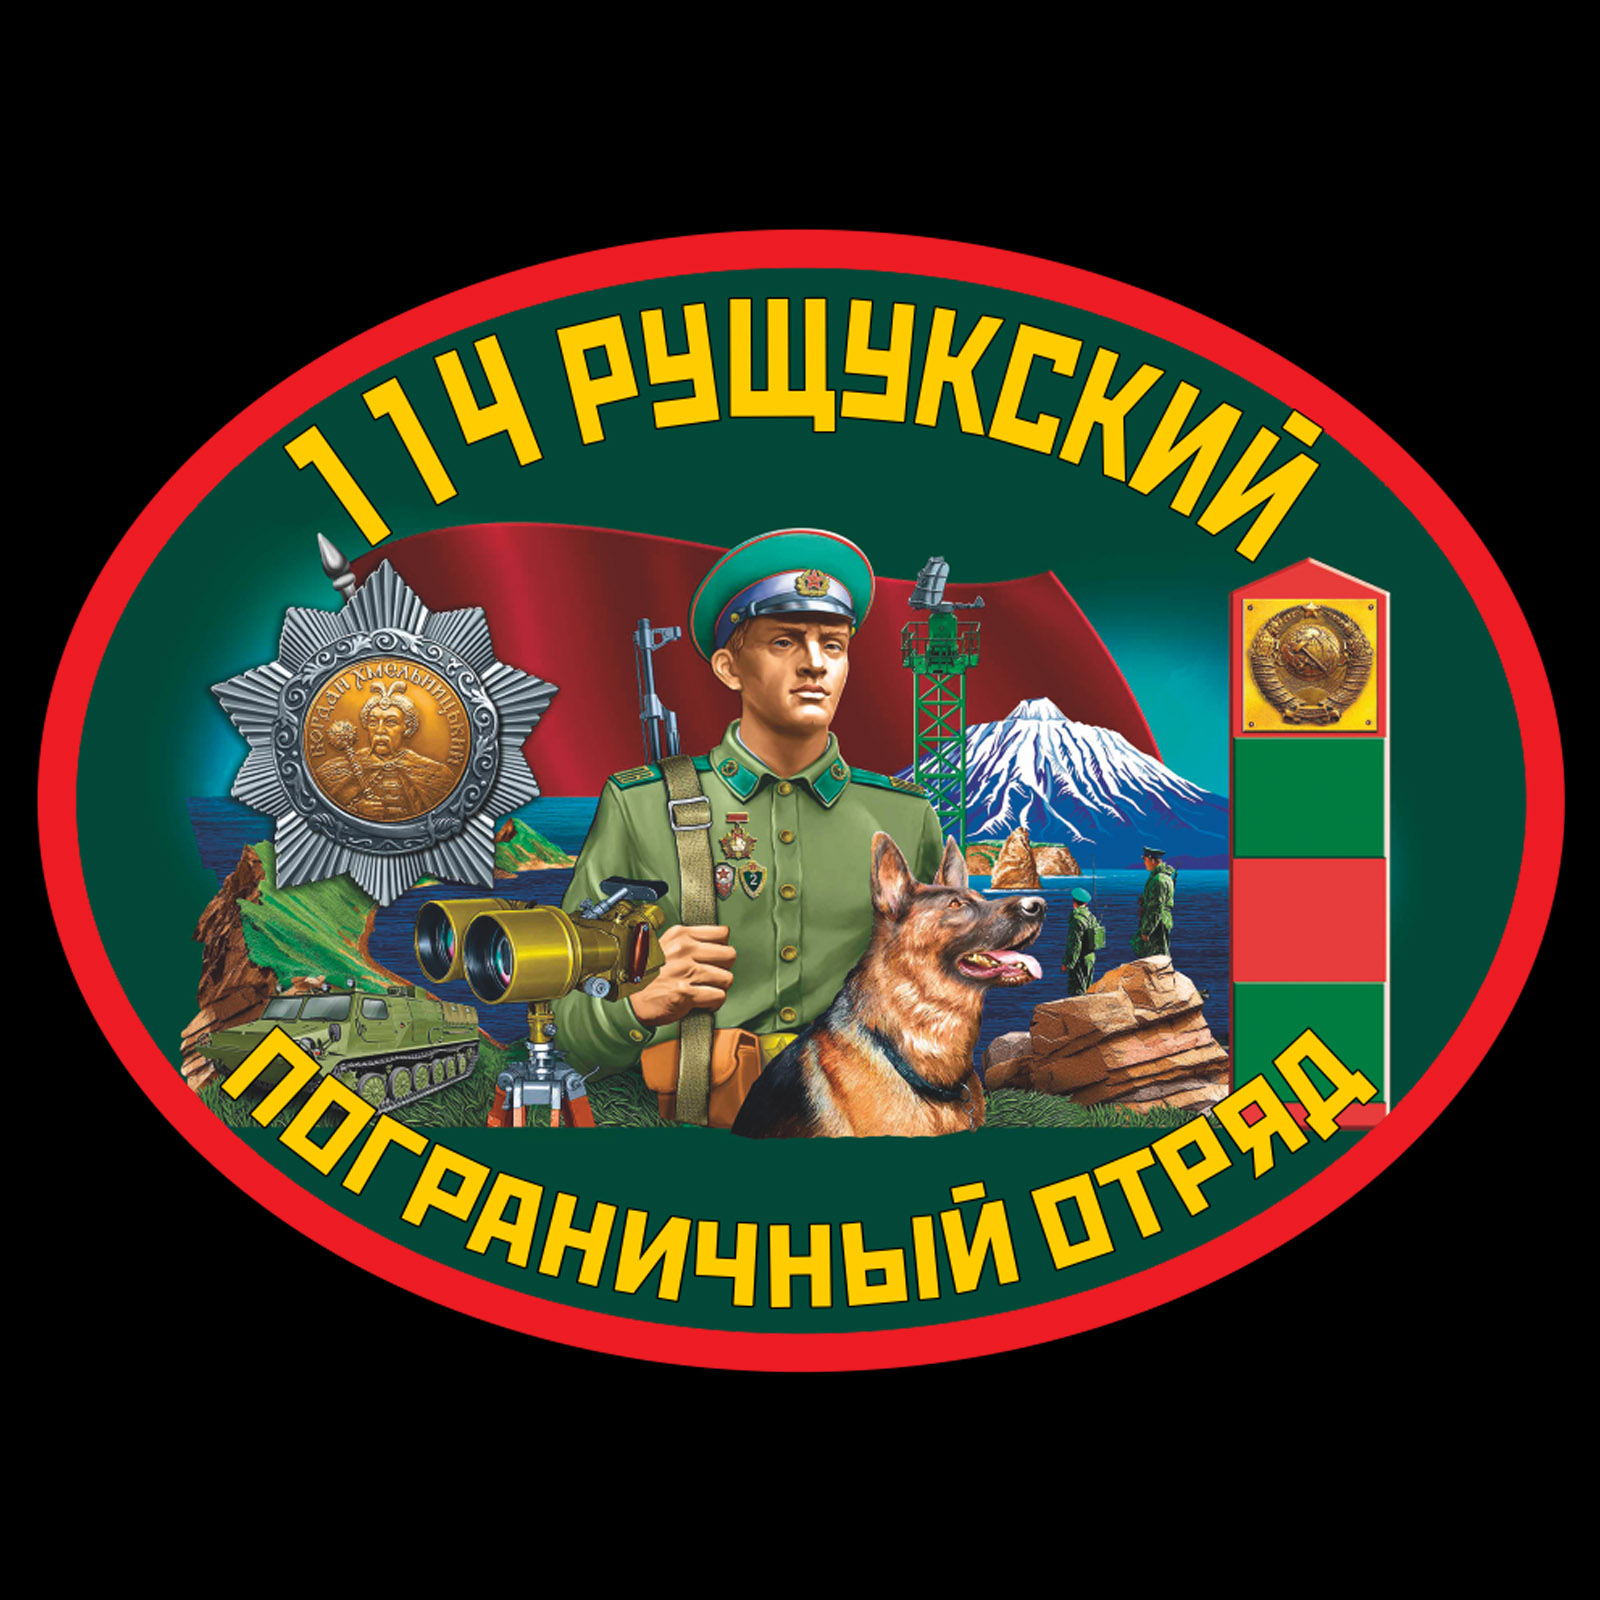 Термотрансфер 114 Рущукский пограничный отряд